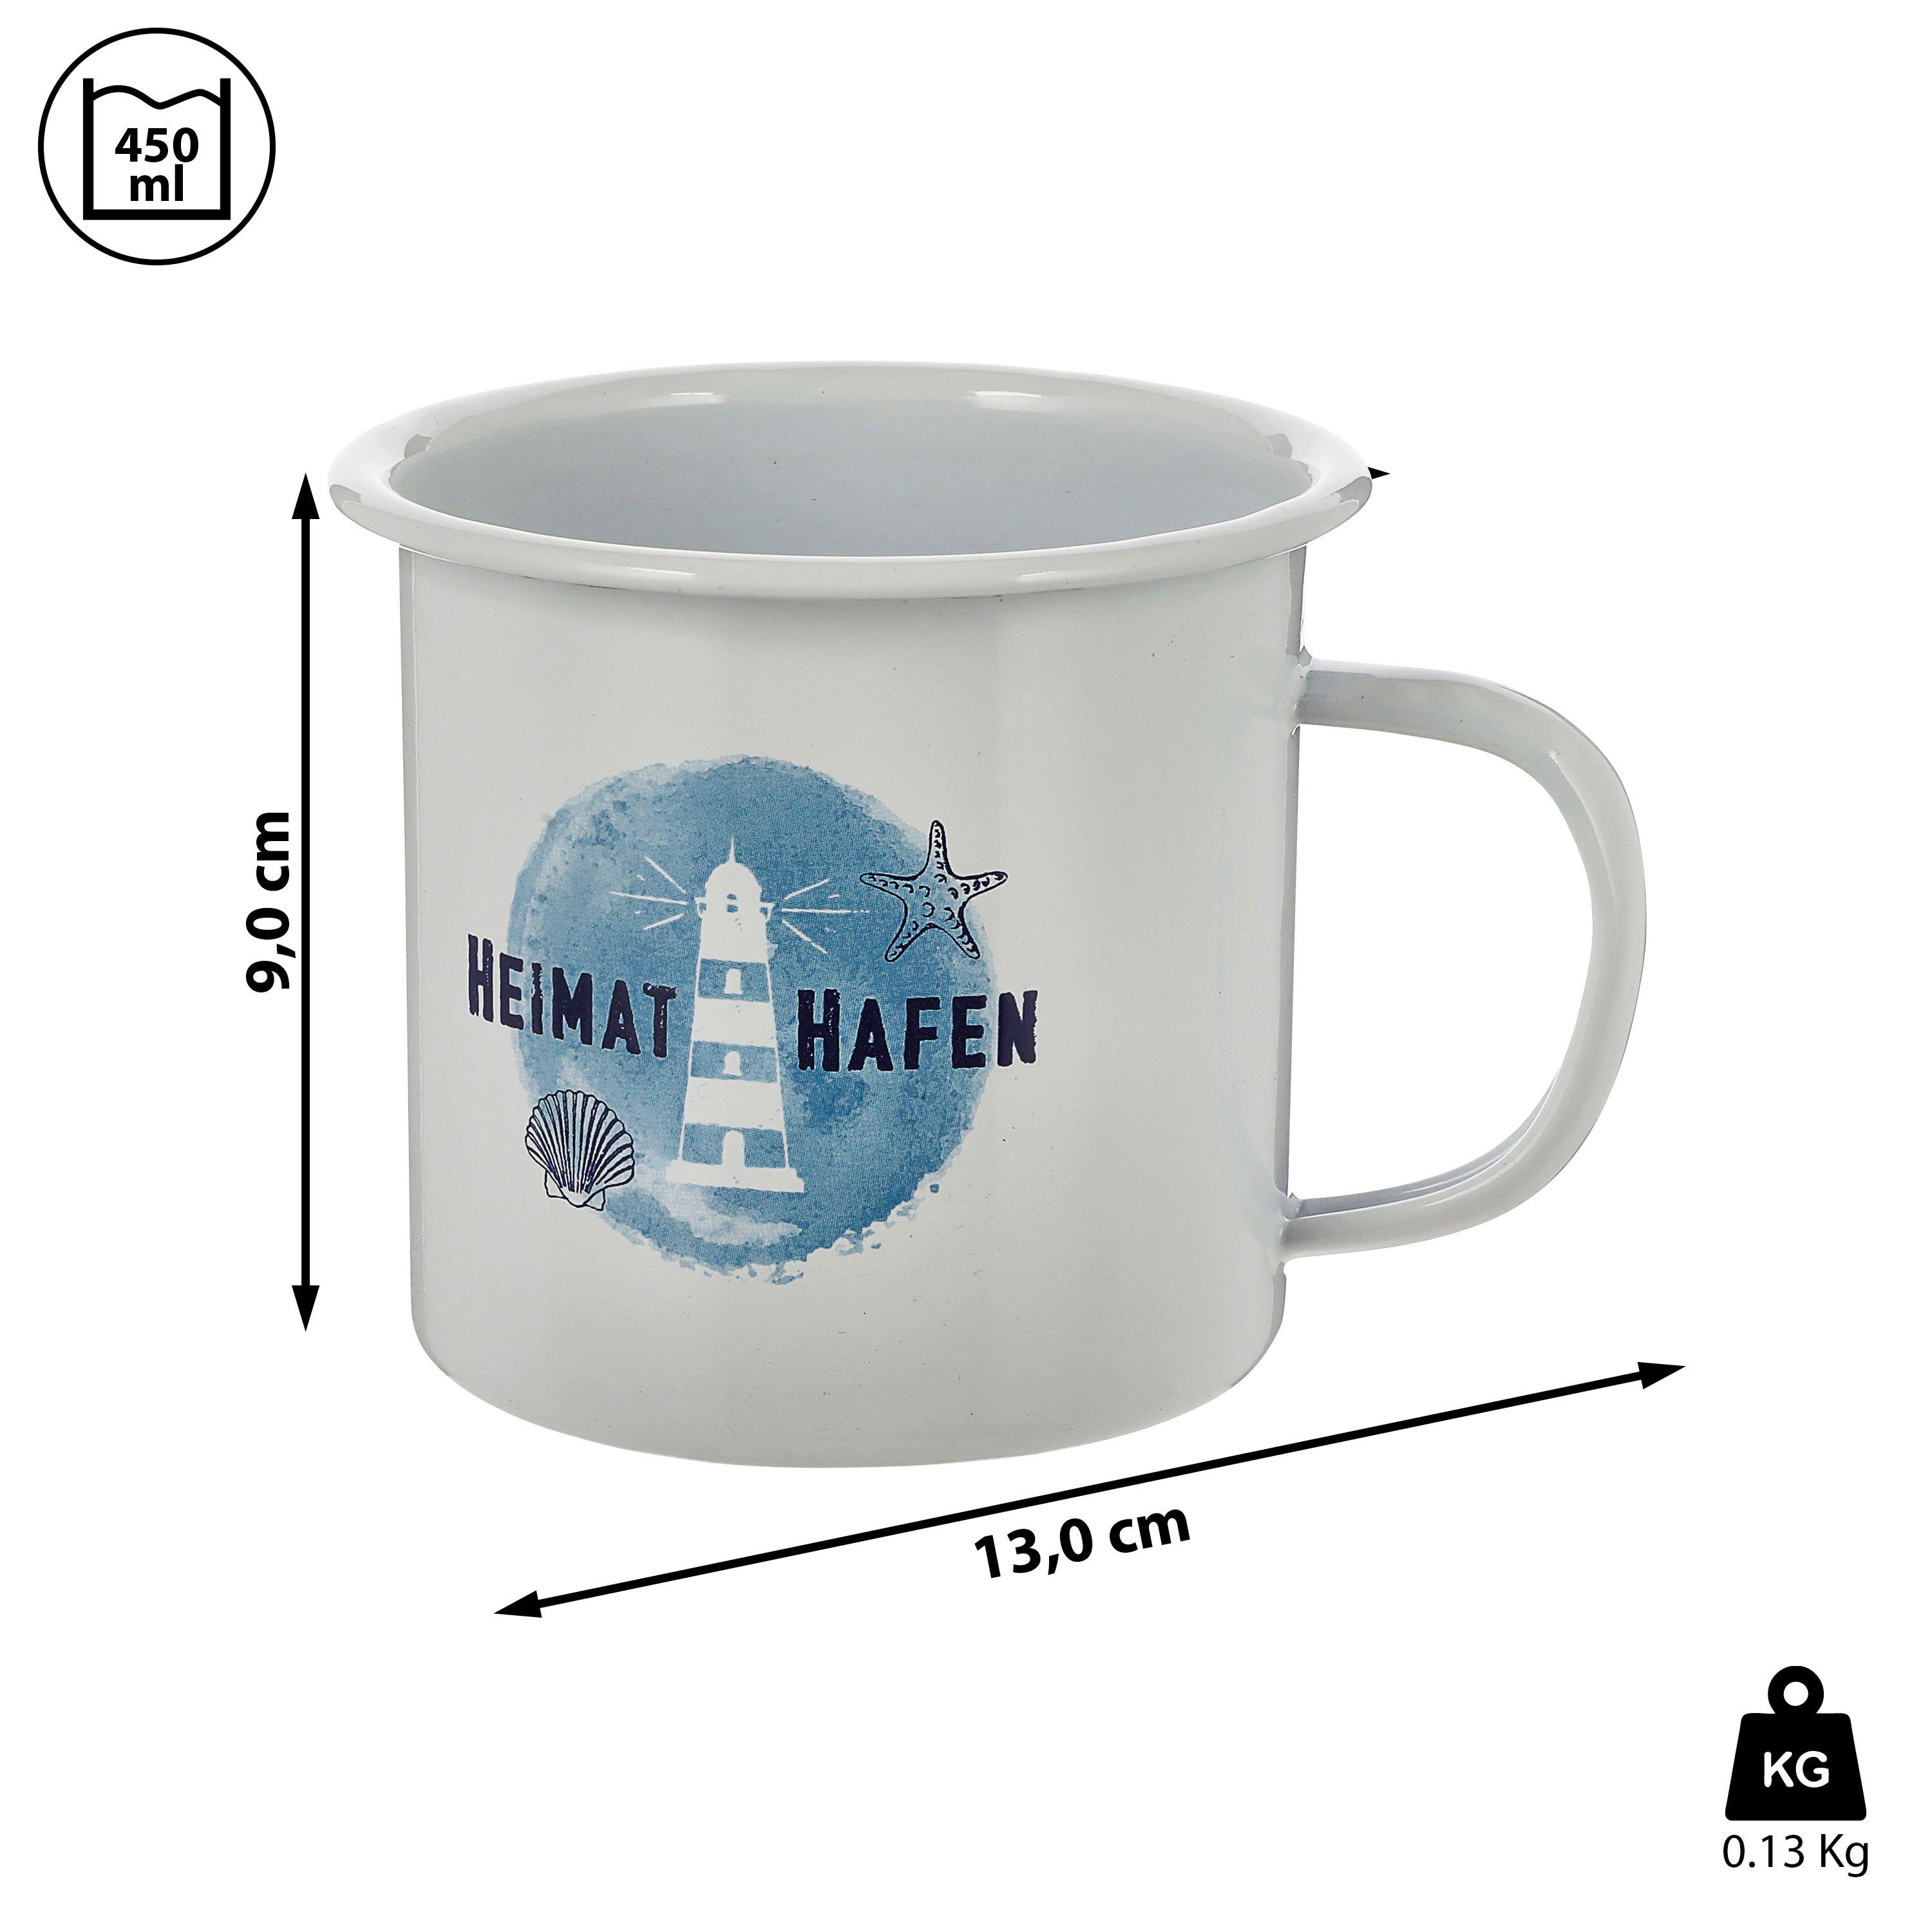 CEPEWA Tasse Kaffeebecher "Heimathafen" Emaille 450ml 13x9cm